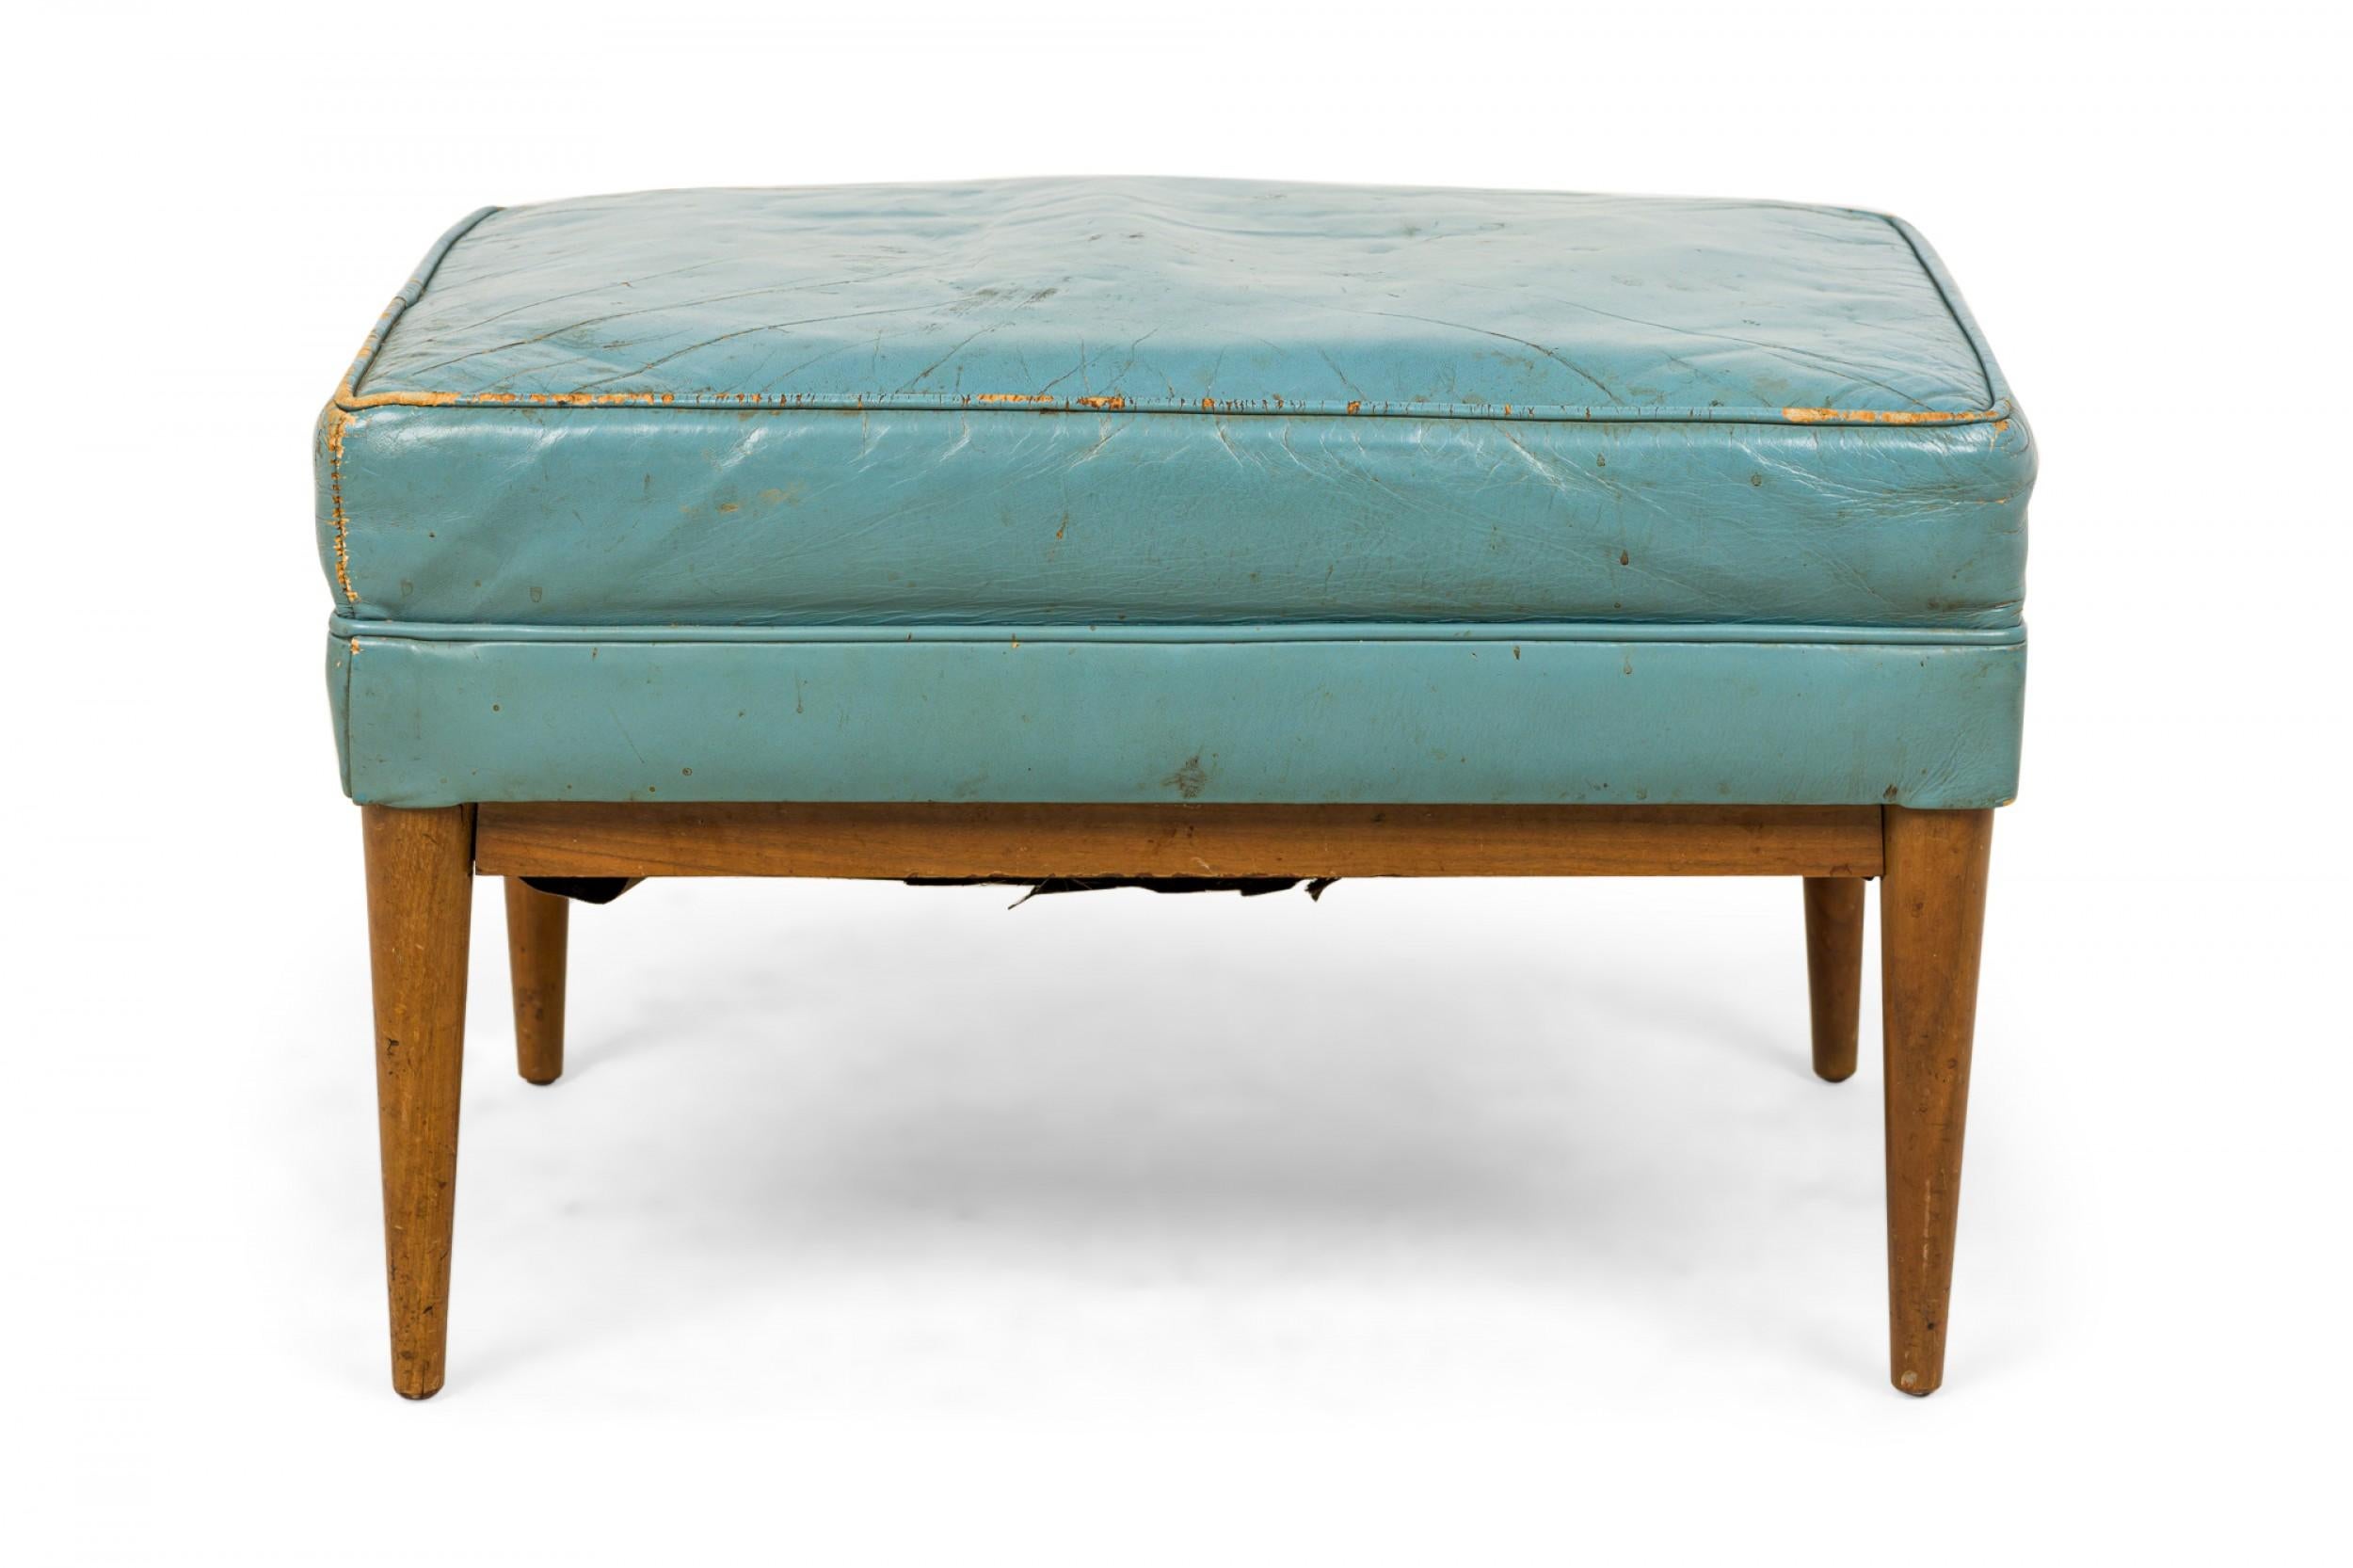 Pouf rectangulaire américain du milieu du siècle avec une assise rembourrée en cuir bleu reposant sur un cadre en noyer avec des pieds effilés. (Paul Mccobb pour Directional).
     